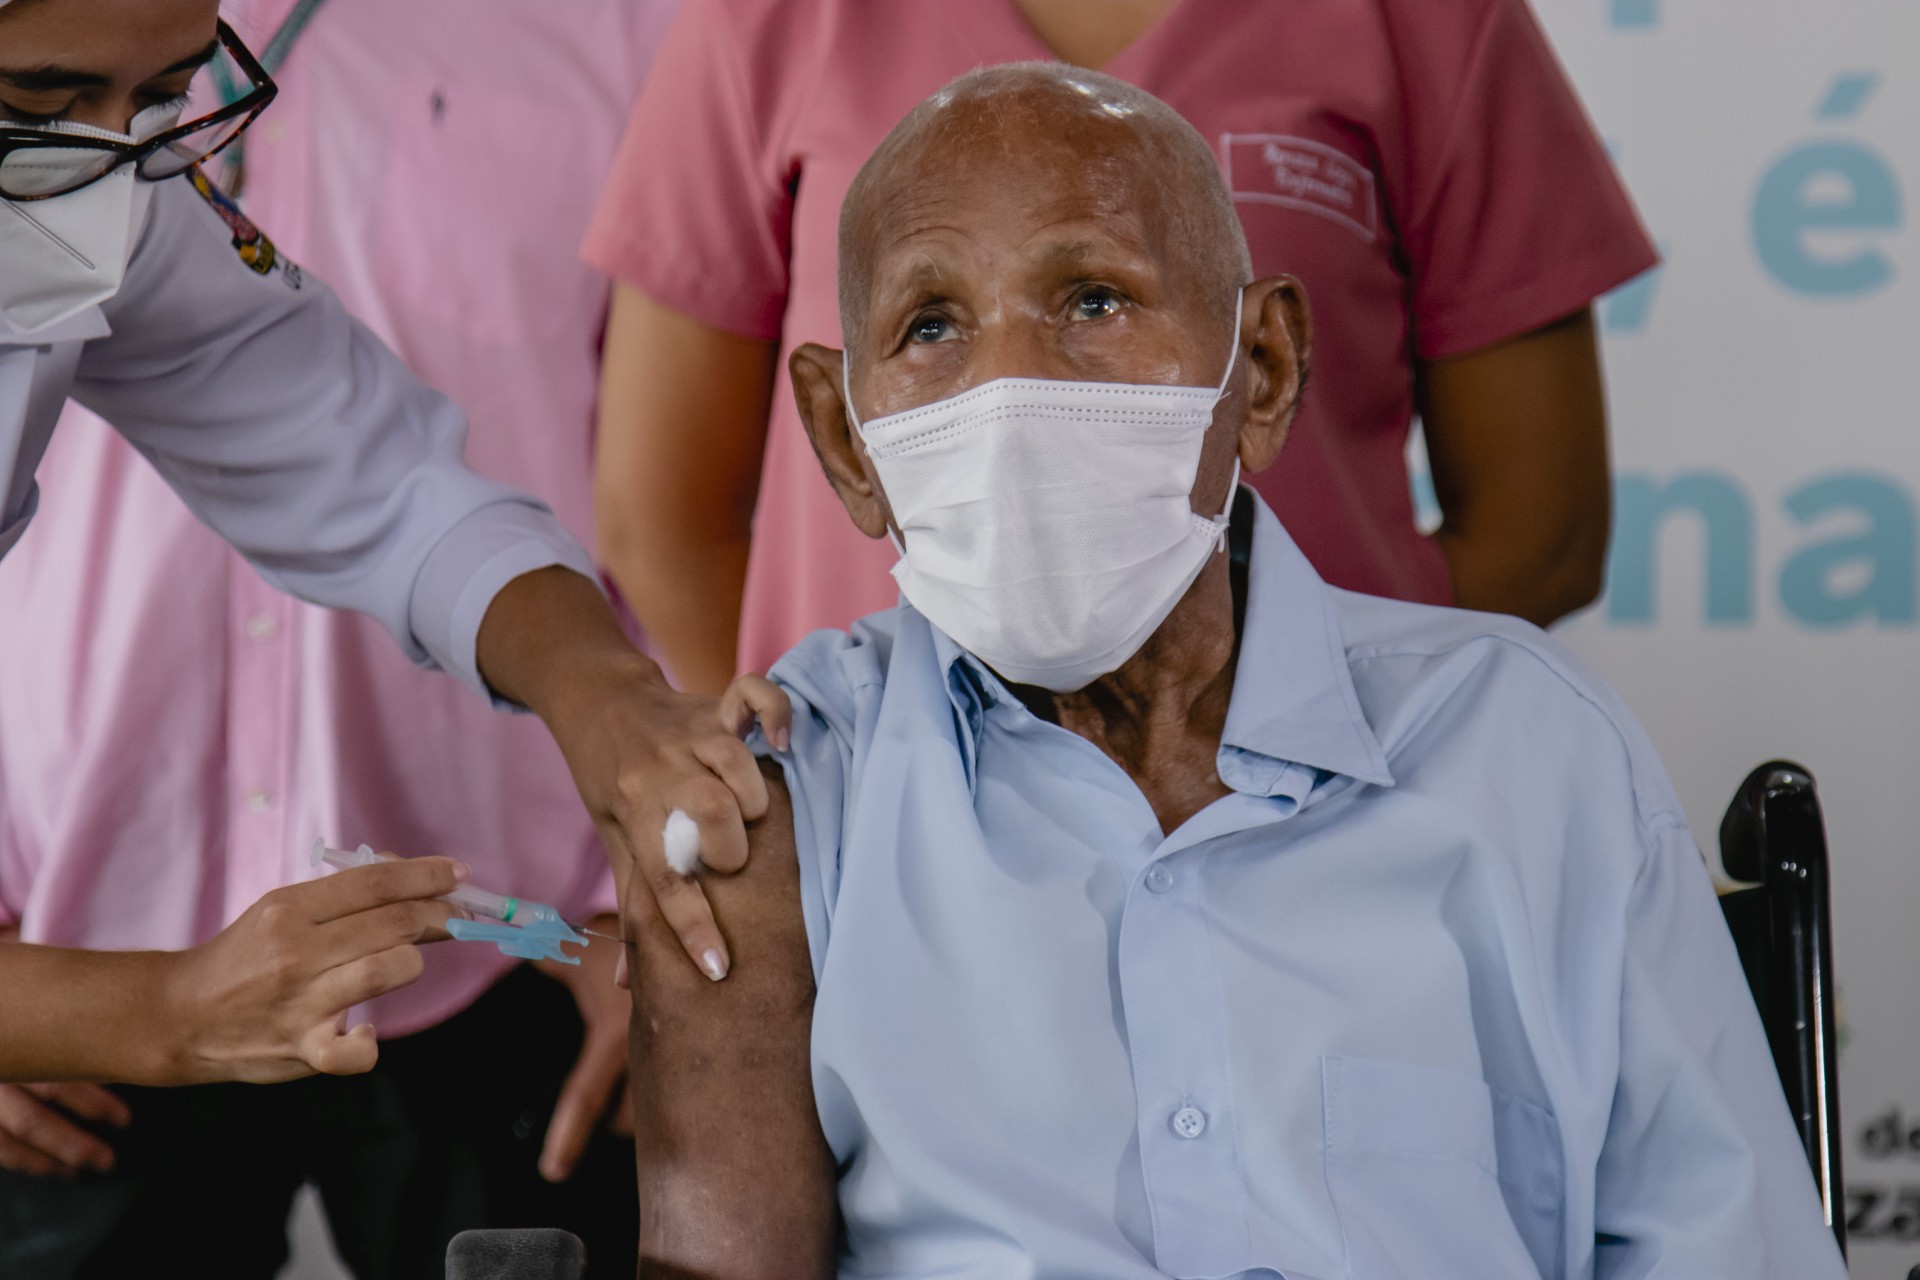  José Pereira dos Santos, 106 anos, um dos idosos do Lar Torres de Melo vacinado contra a Covid-19 (Foto: Aurelio Alves)